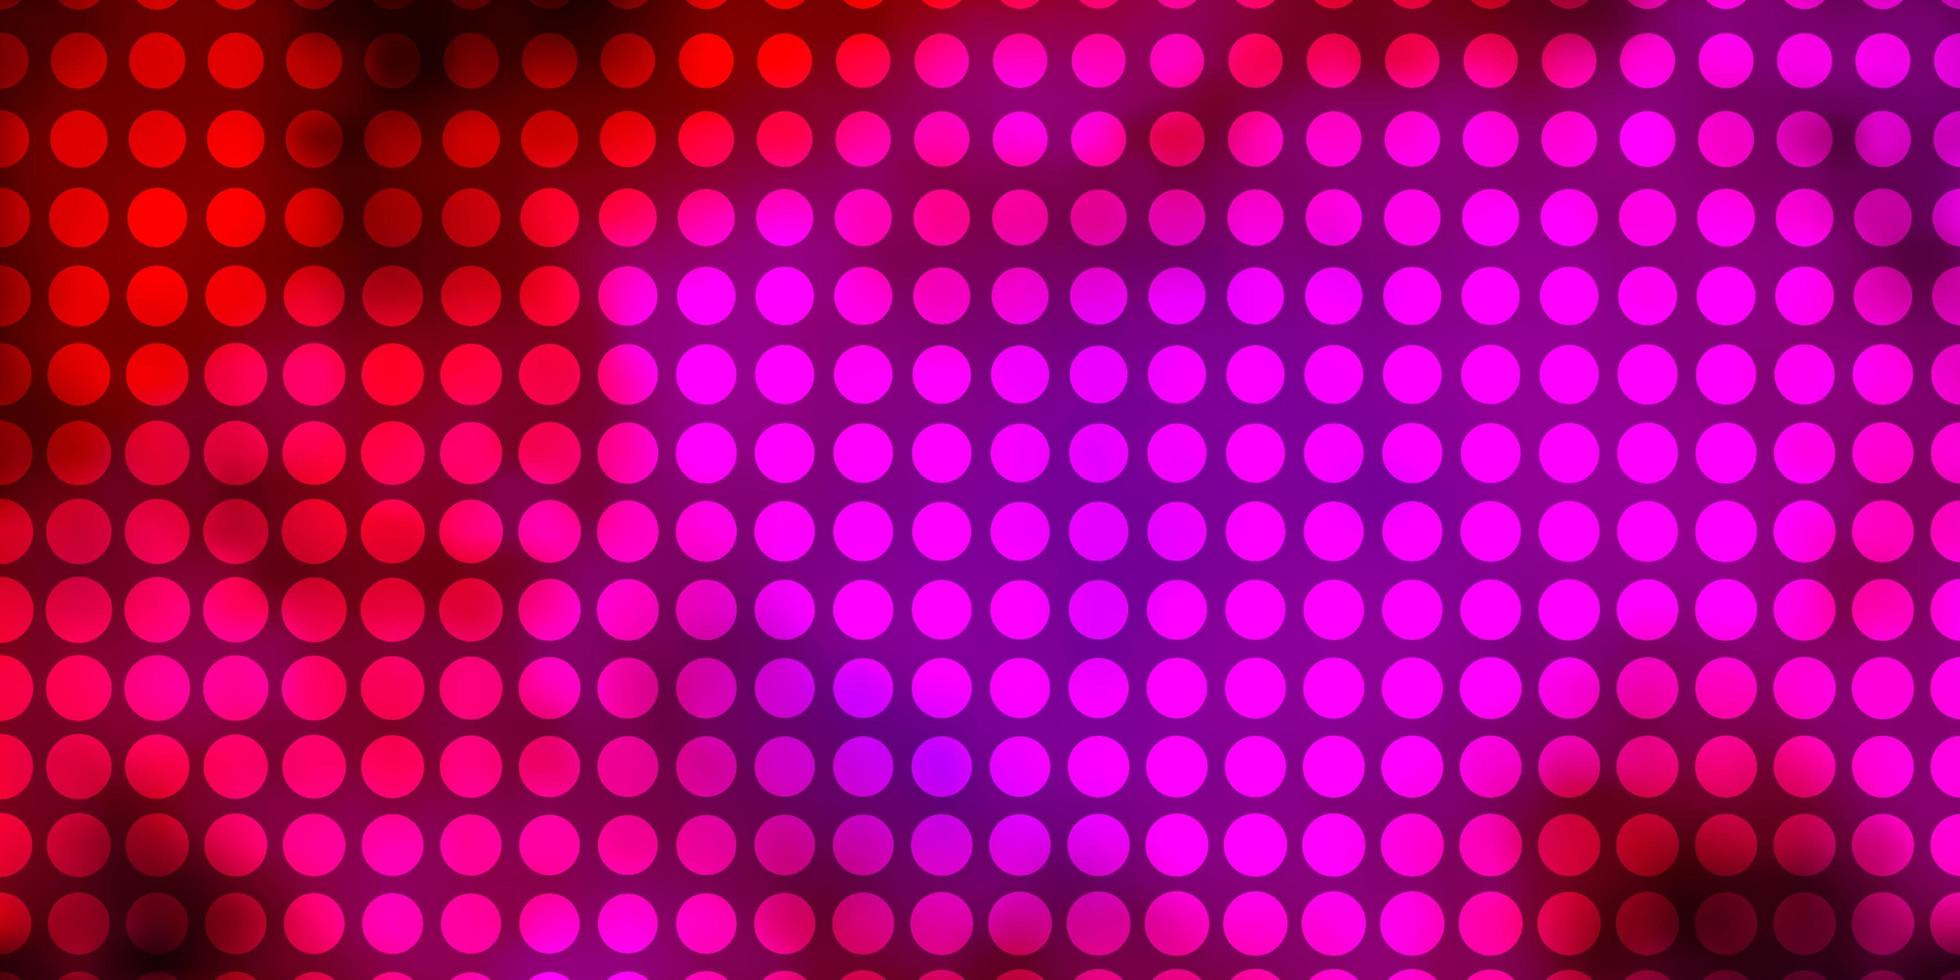 padrão de vetor rosa escuro com círculos.